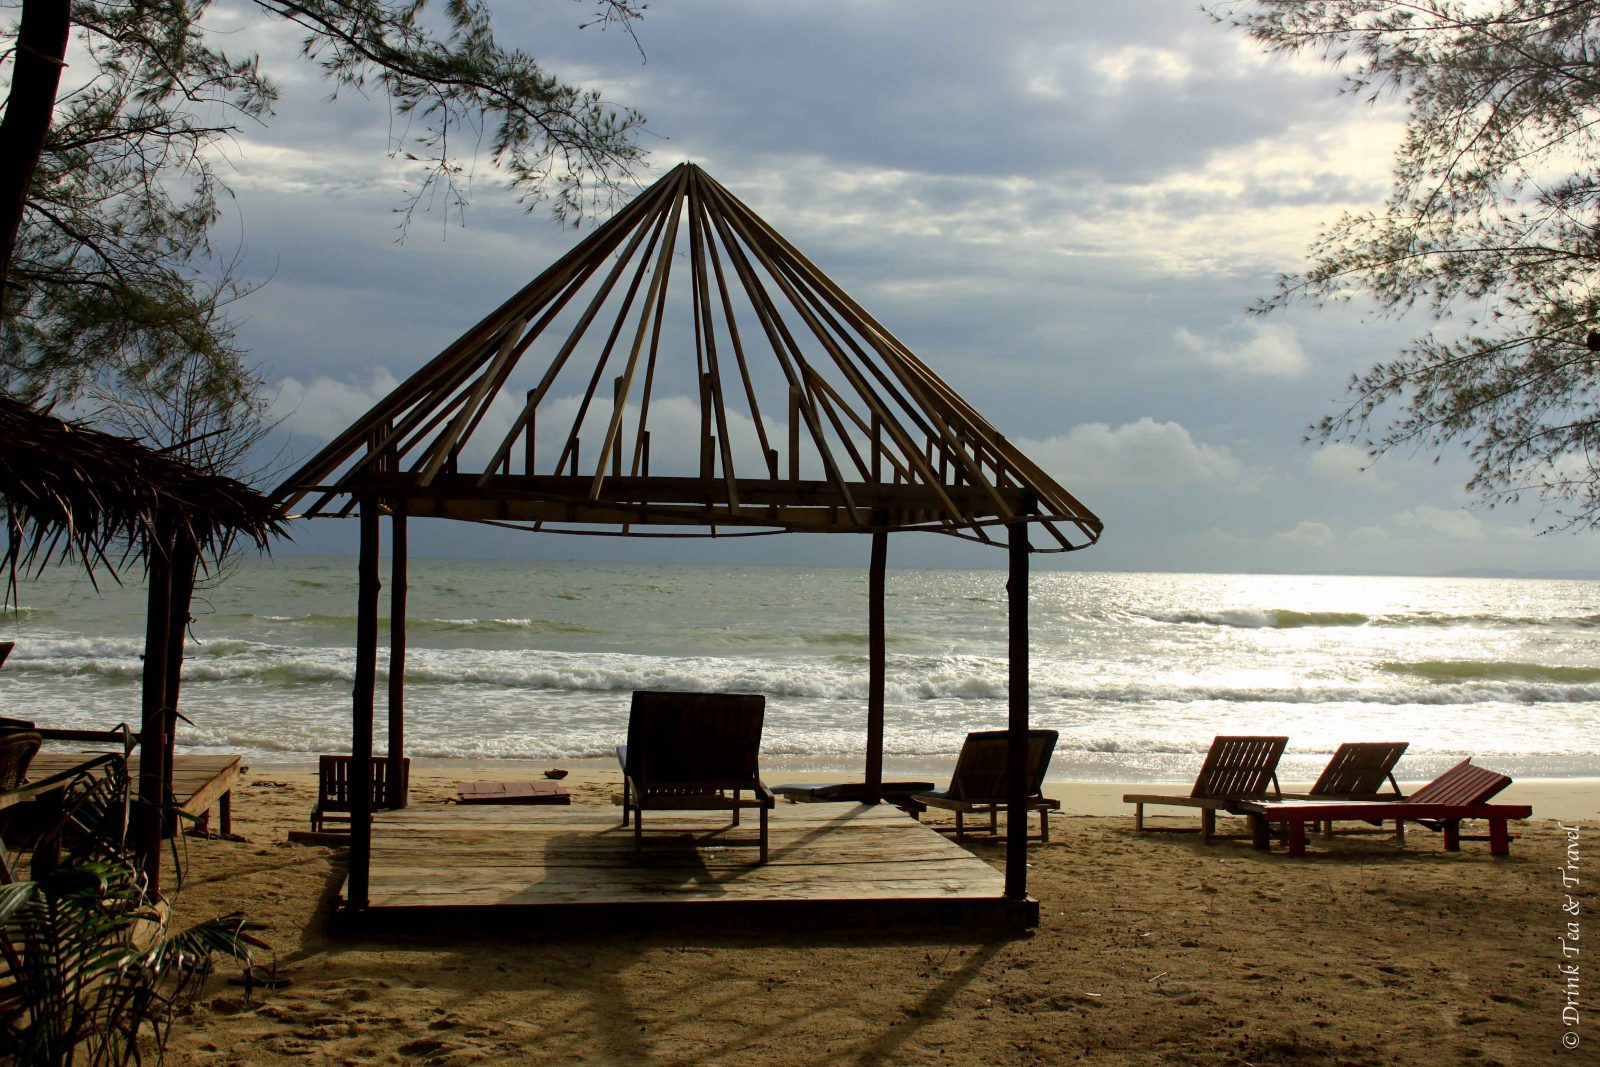 Best Beaches in Cambodia